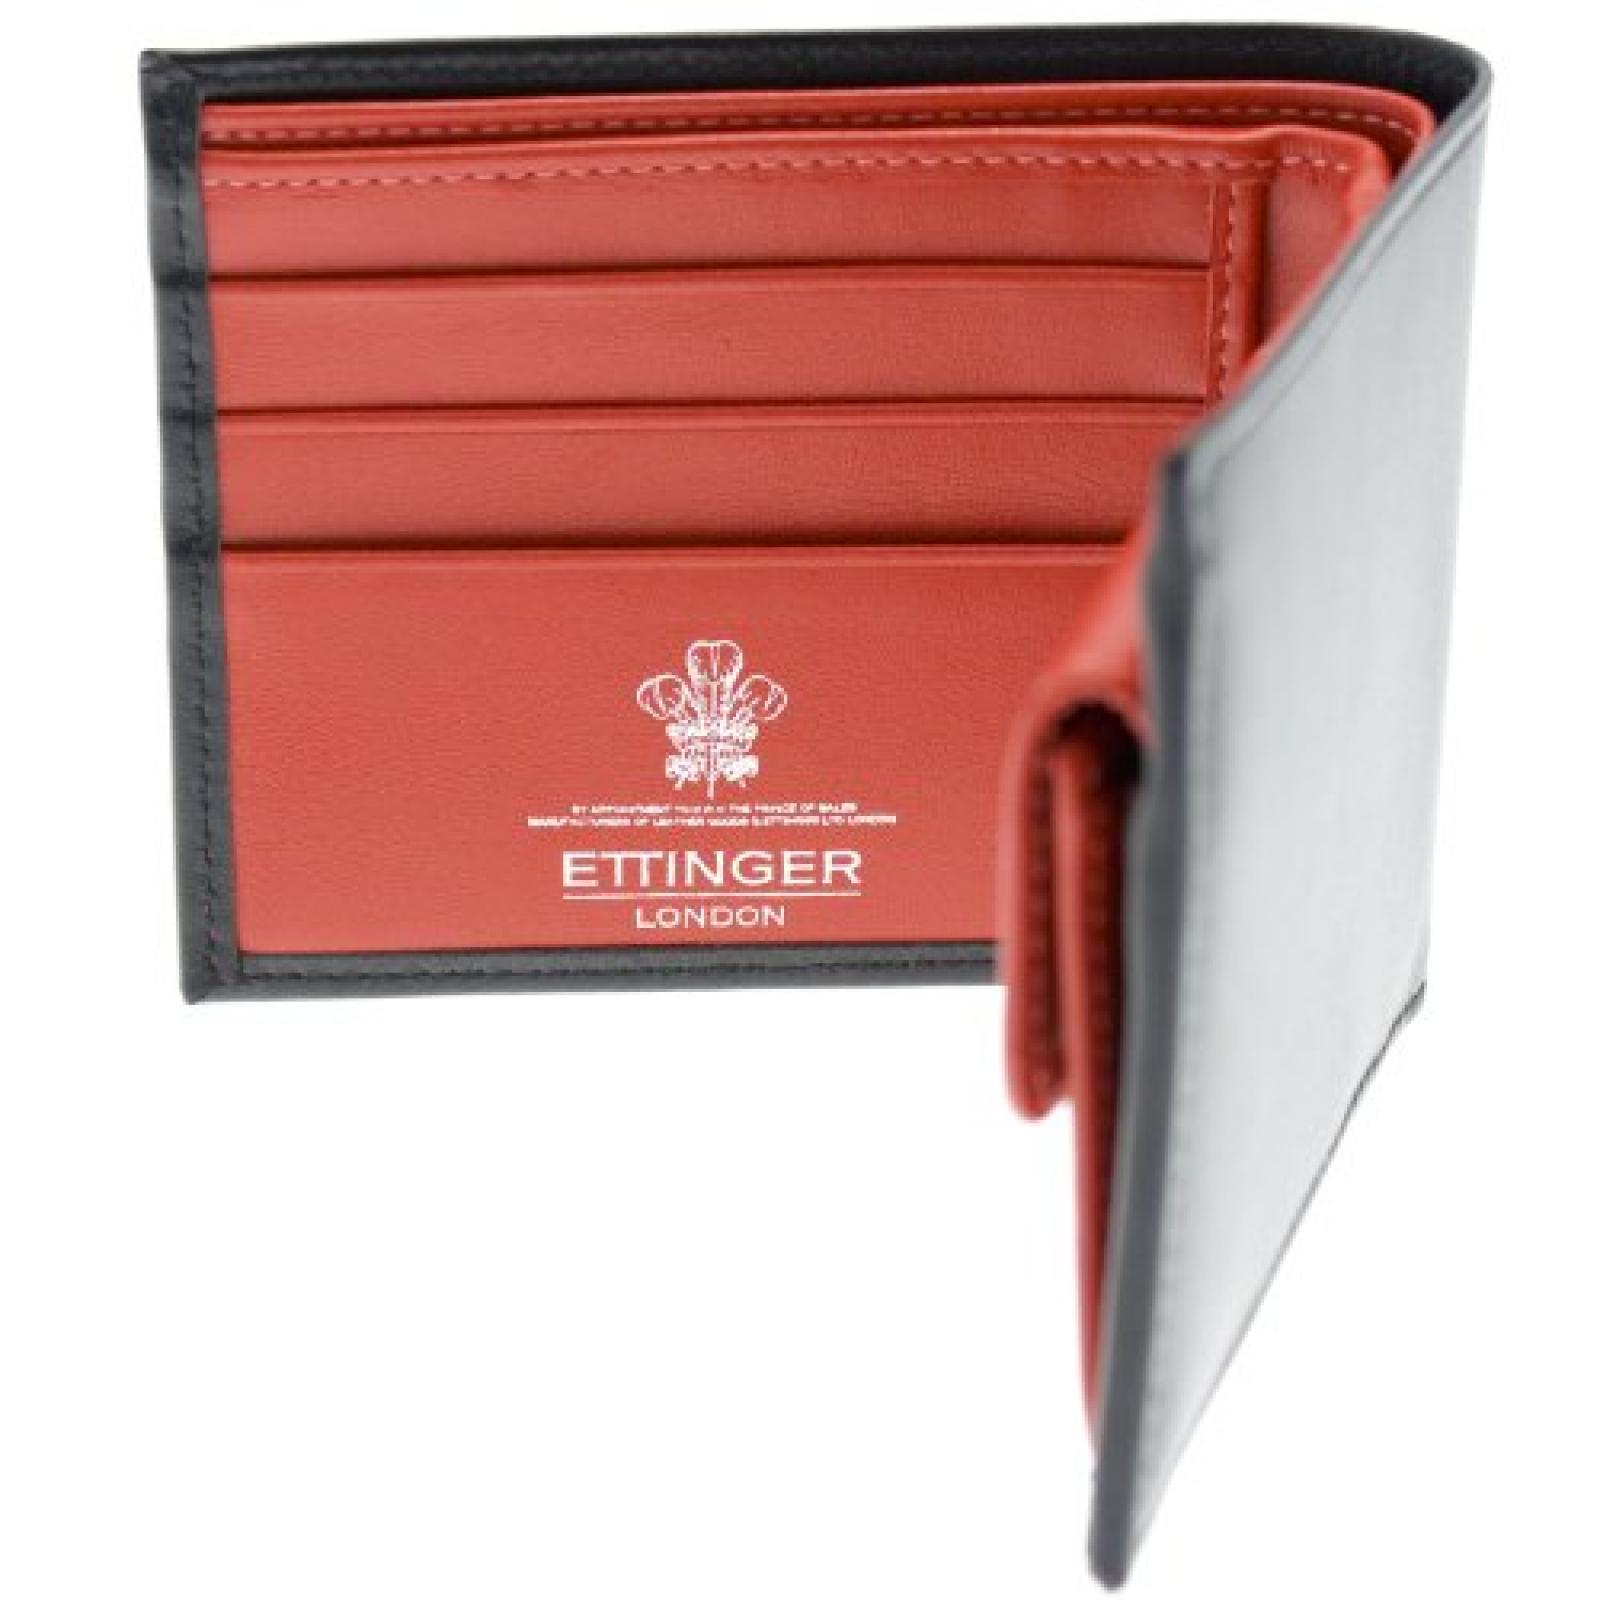 Ettinger - Brieftasche aus Leder mit Münzfach - Schwarz außen / Rot innen 